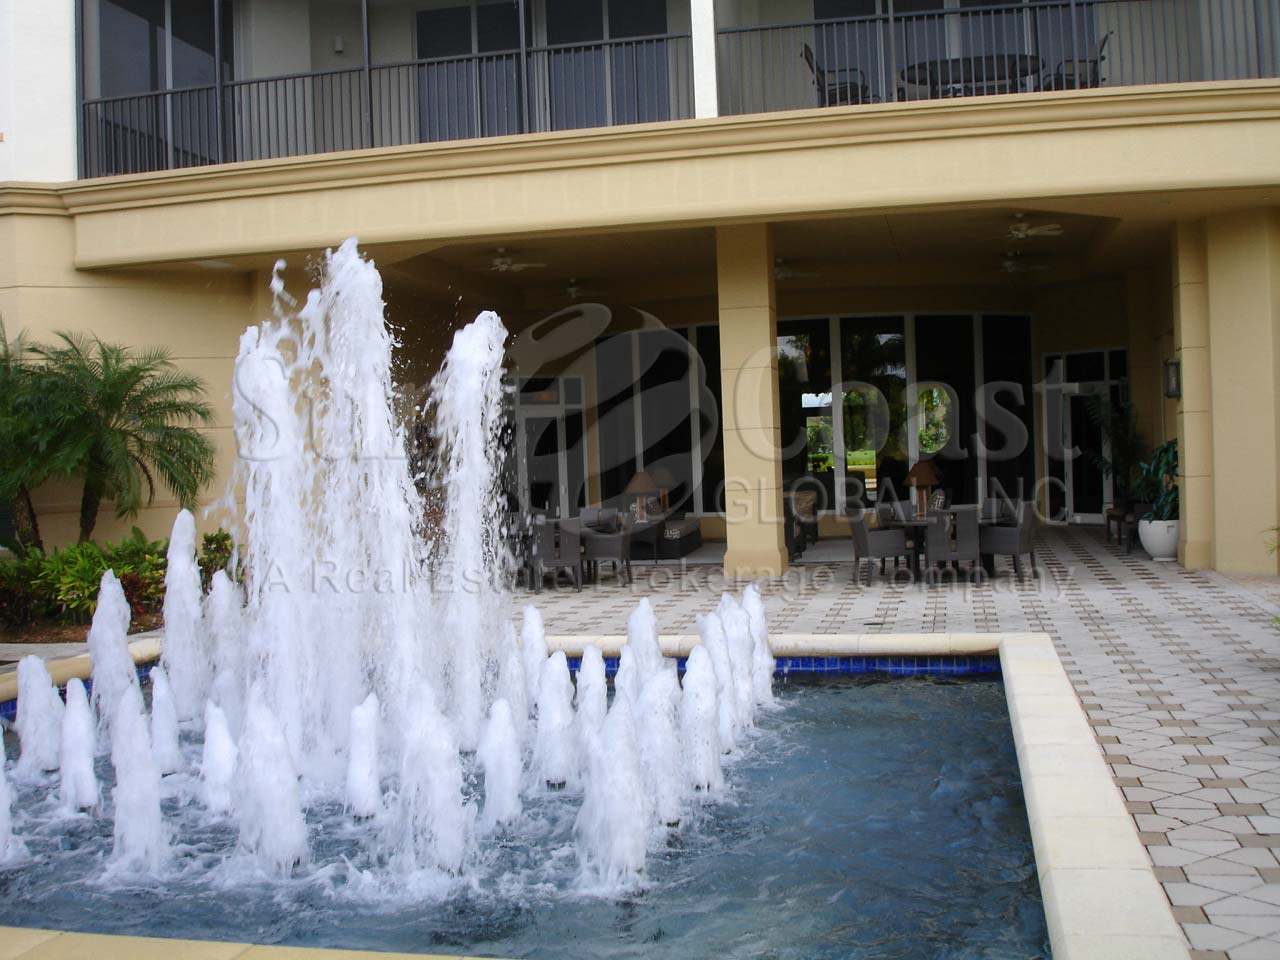 Serano Fountain in front of the Patio Area of the Condominium 